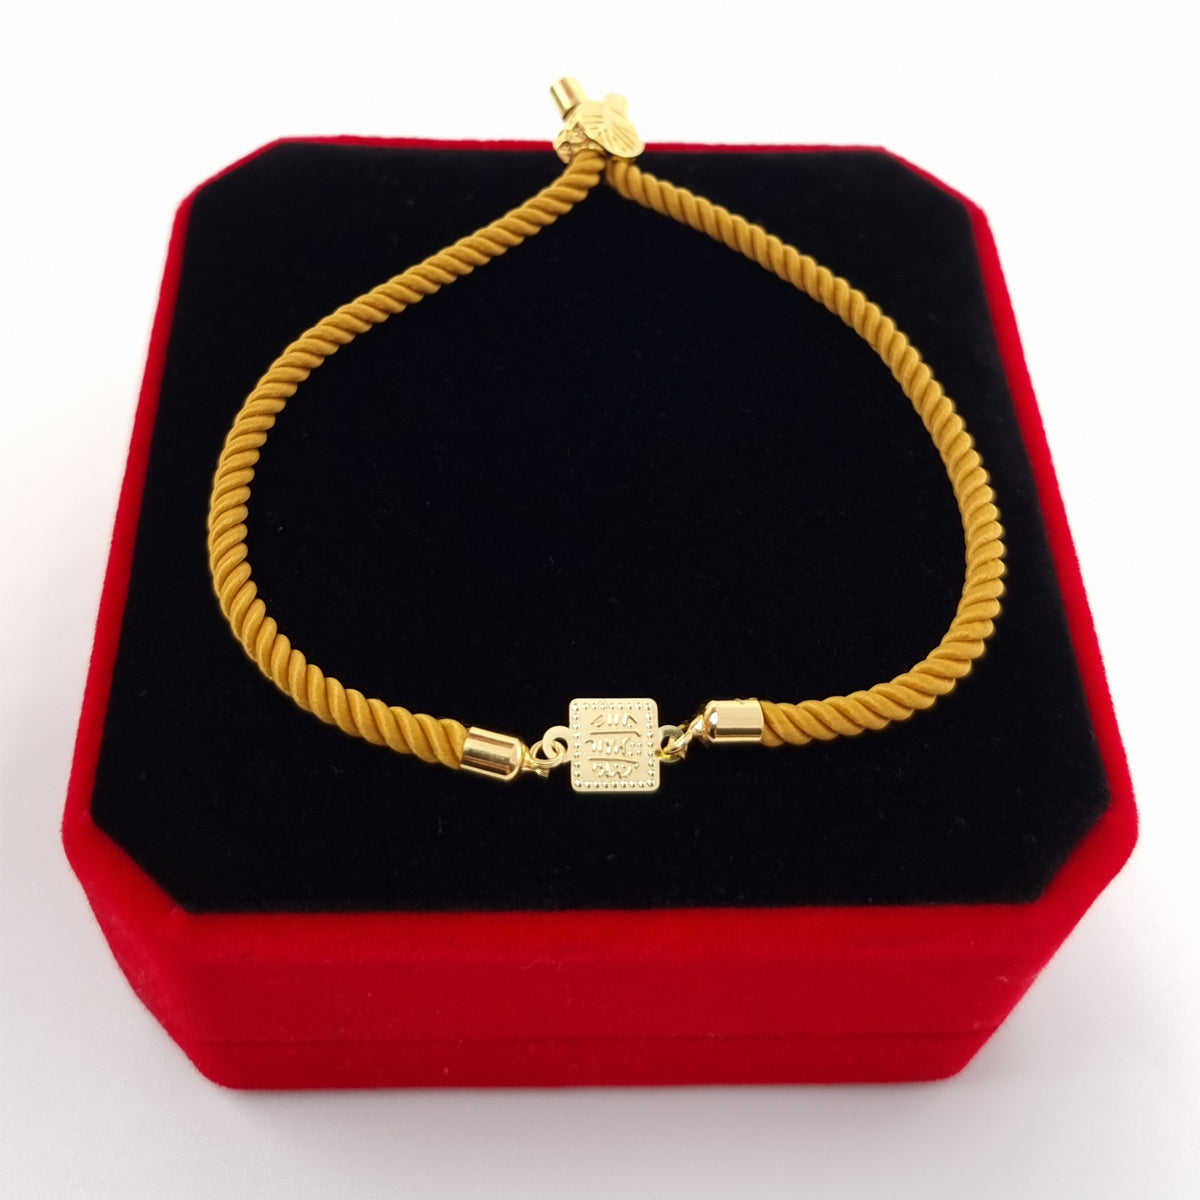 21K Pure Gold Adjustable Bracelet